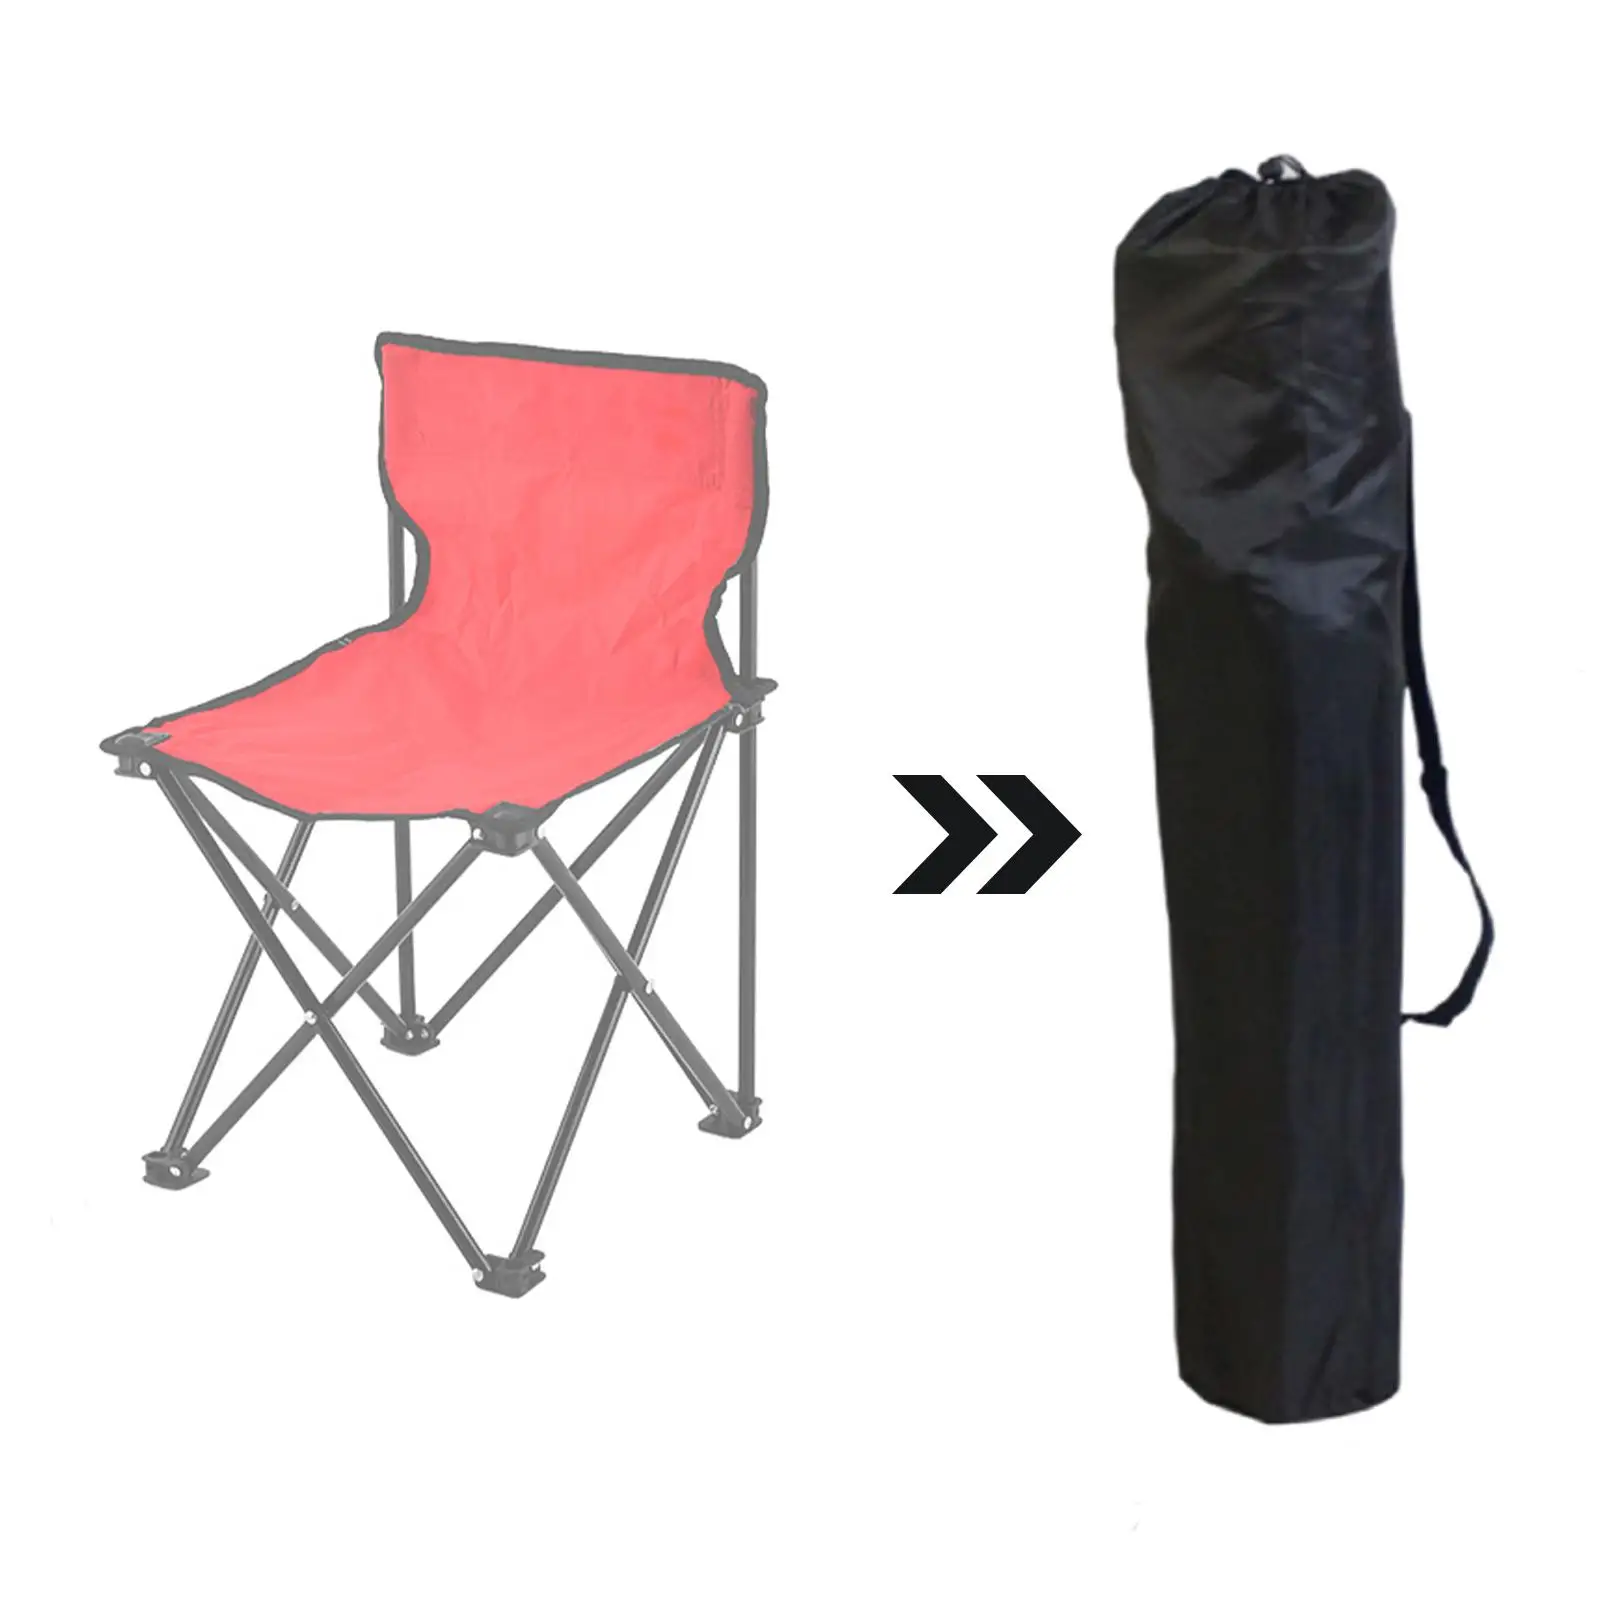 Acampamento Chair Replacement Bag, Folding Carry Bag, Diversos Bolsa, Pátio, Chair Organizer, Casa, Viagem, Ao ar livre, Camping, Praia